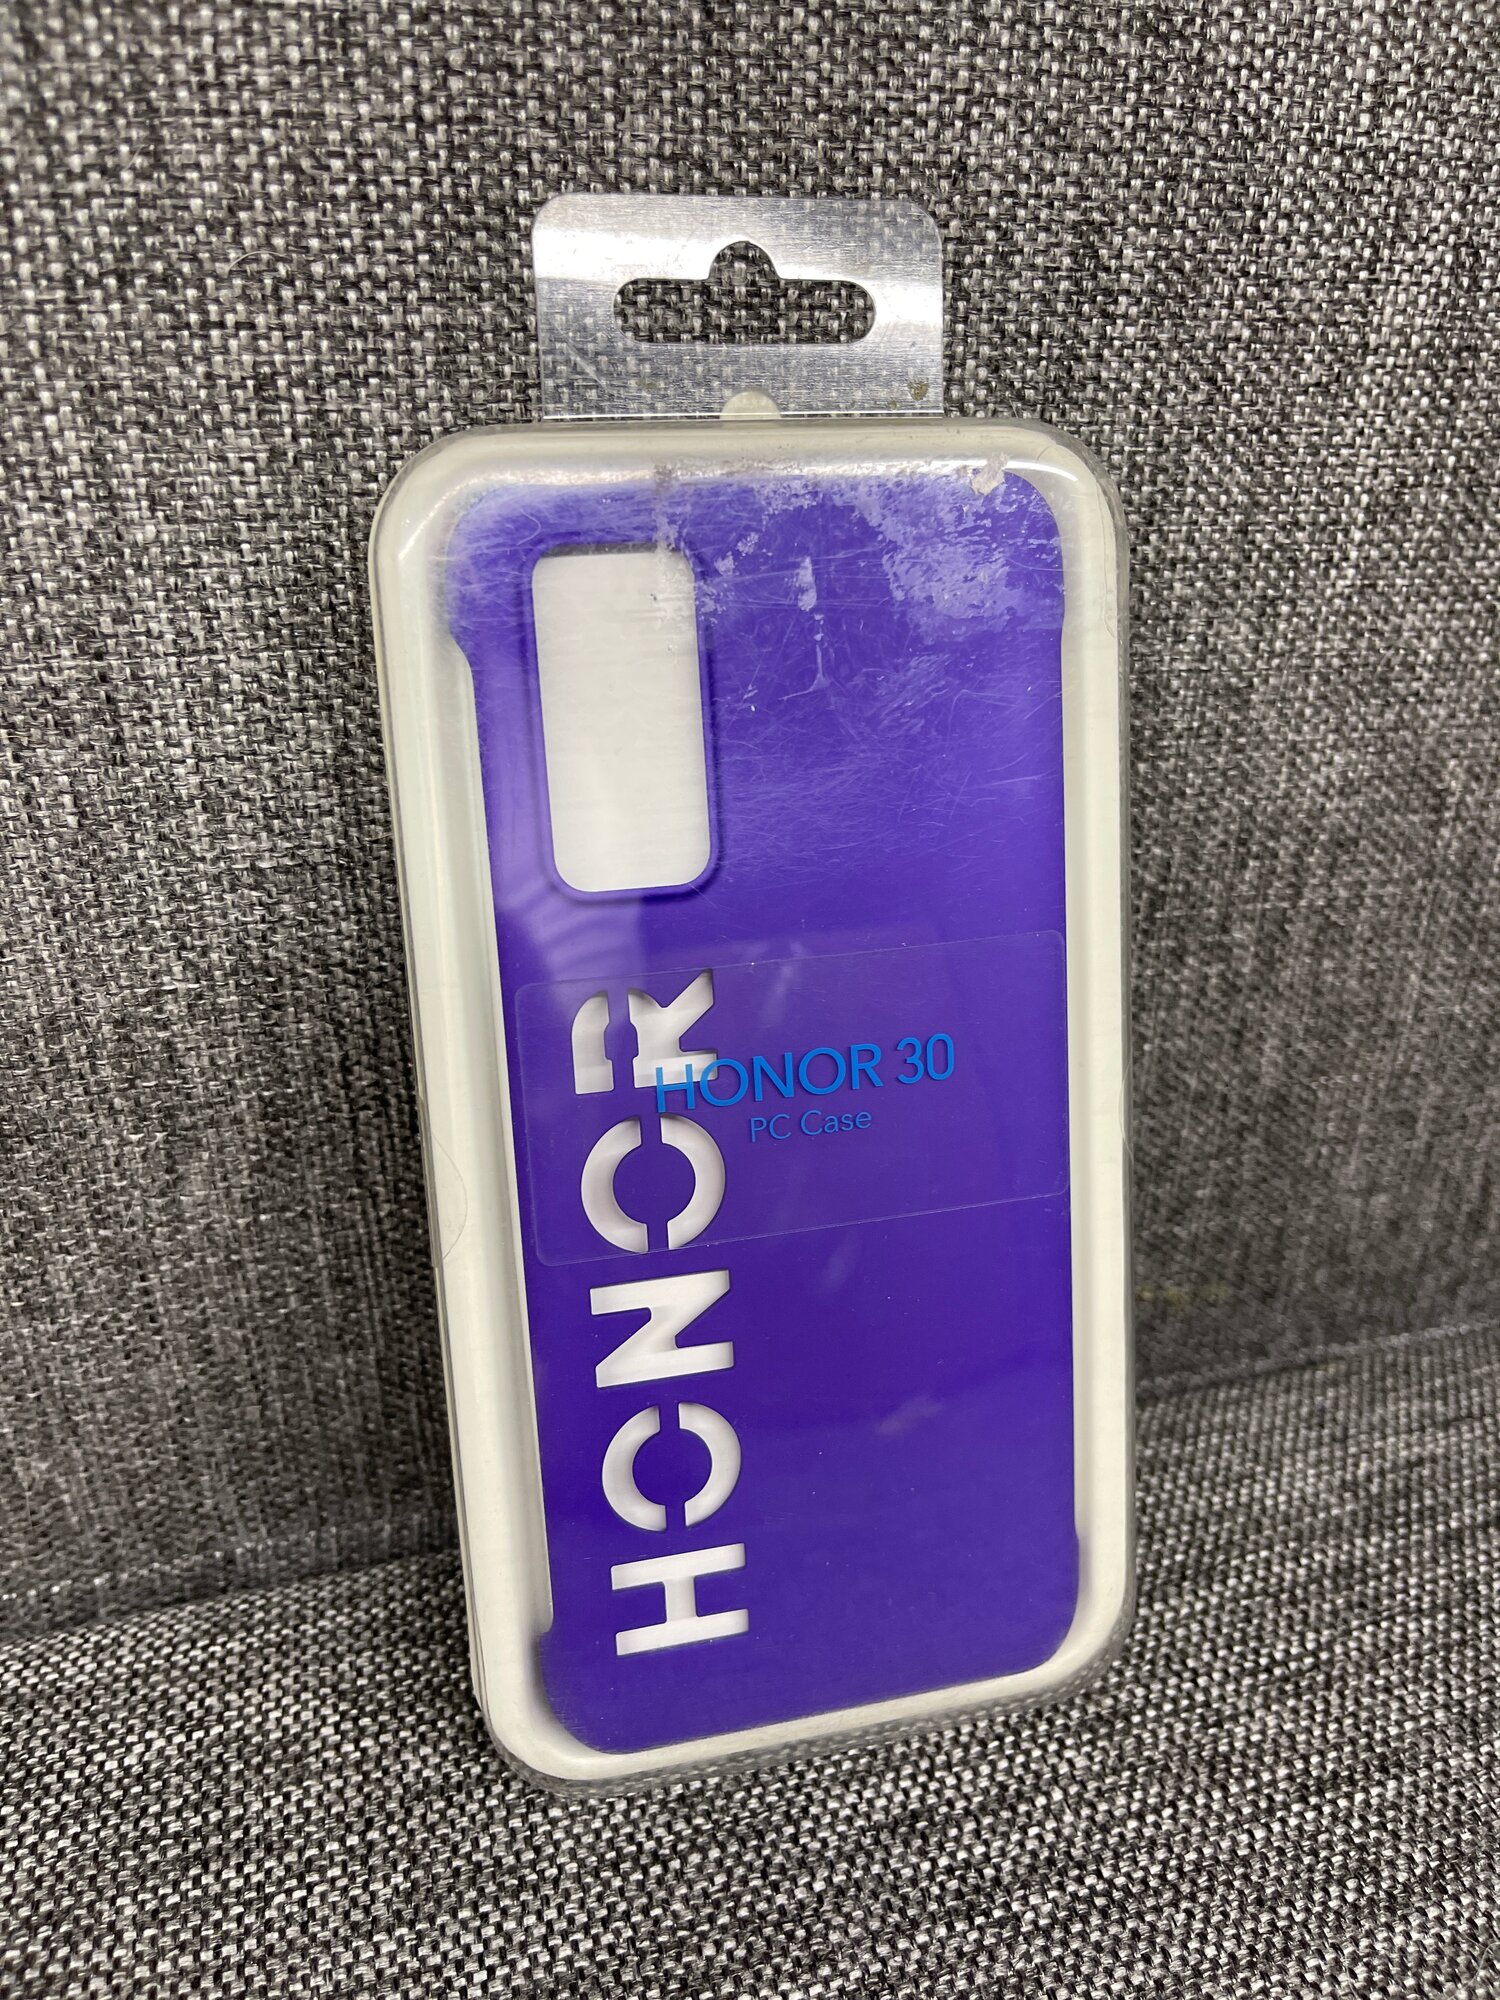 Чехол Honor PC Case для Honor 30, 51994045, фиолетовый